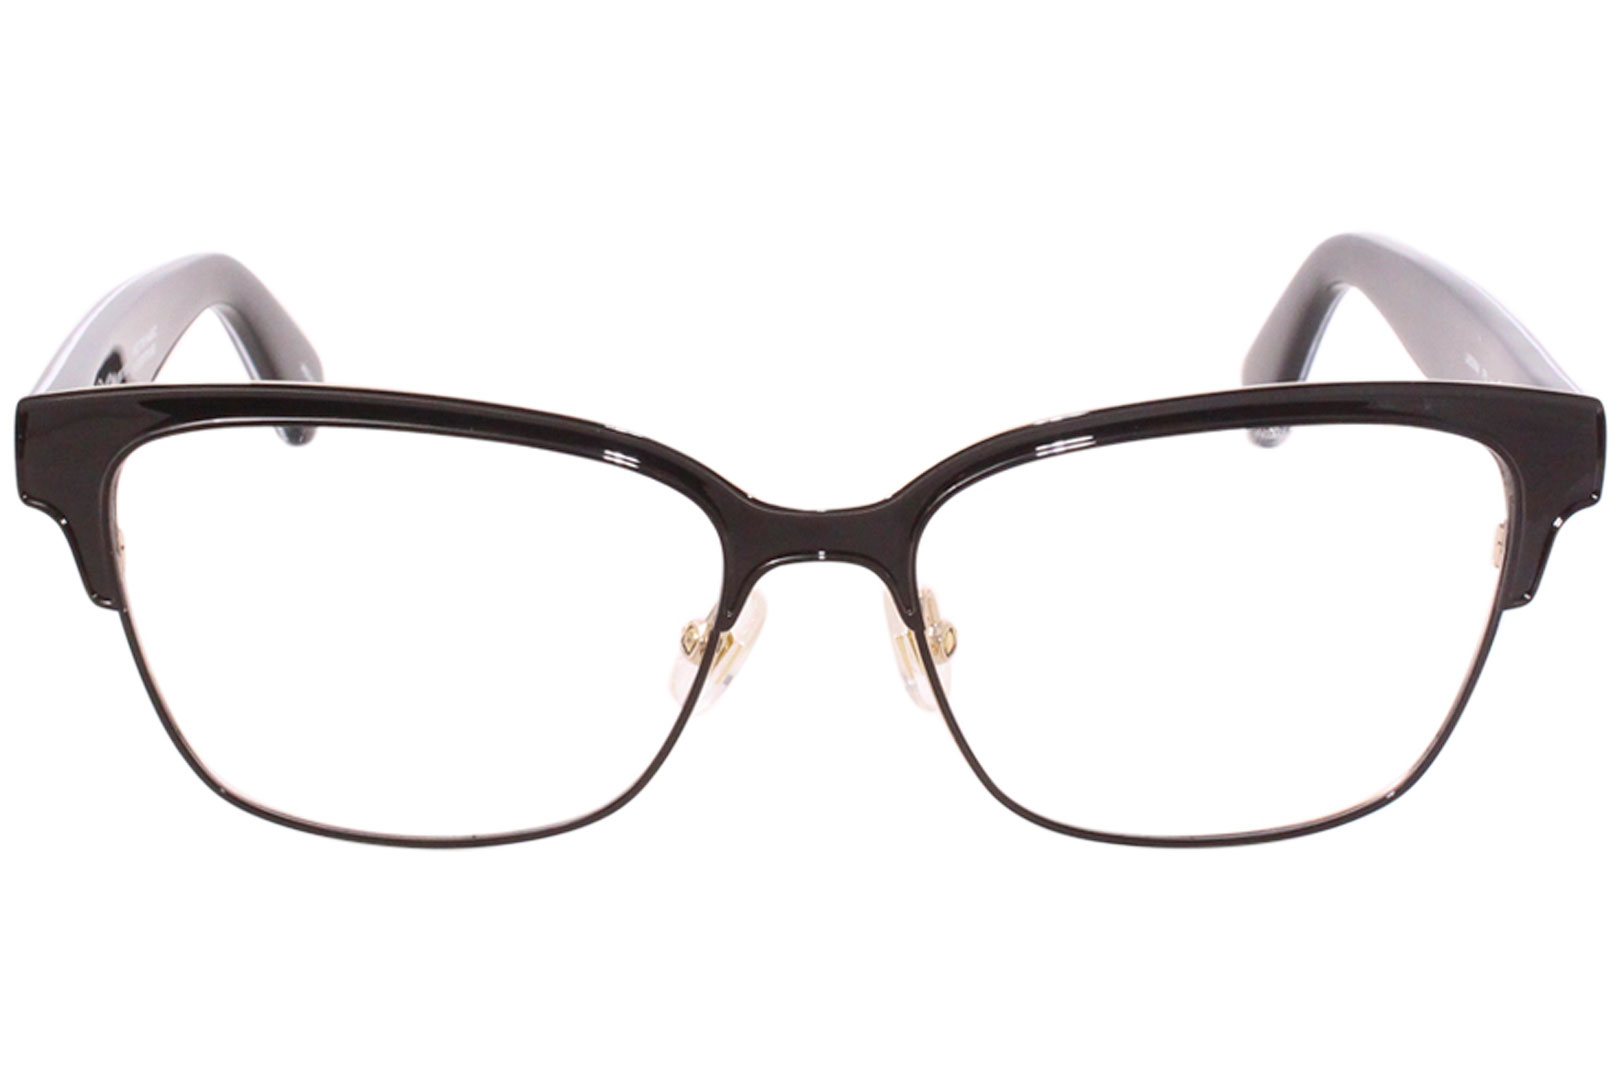 Kate Spade Ladonna FP3 Eyeglasses Women's Black/Gold/Leopard Optical Frame  53mm 